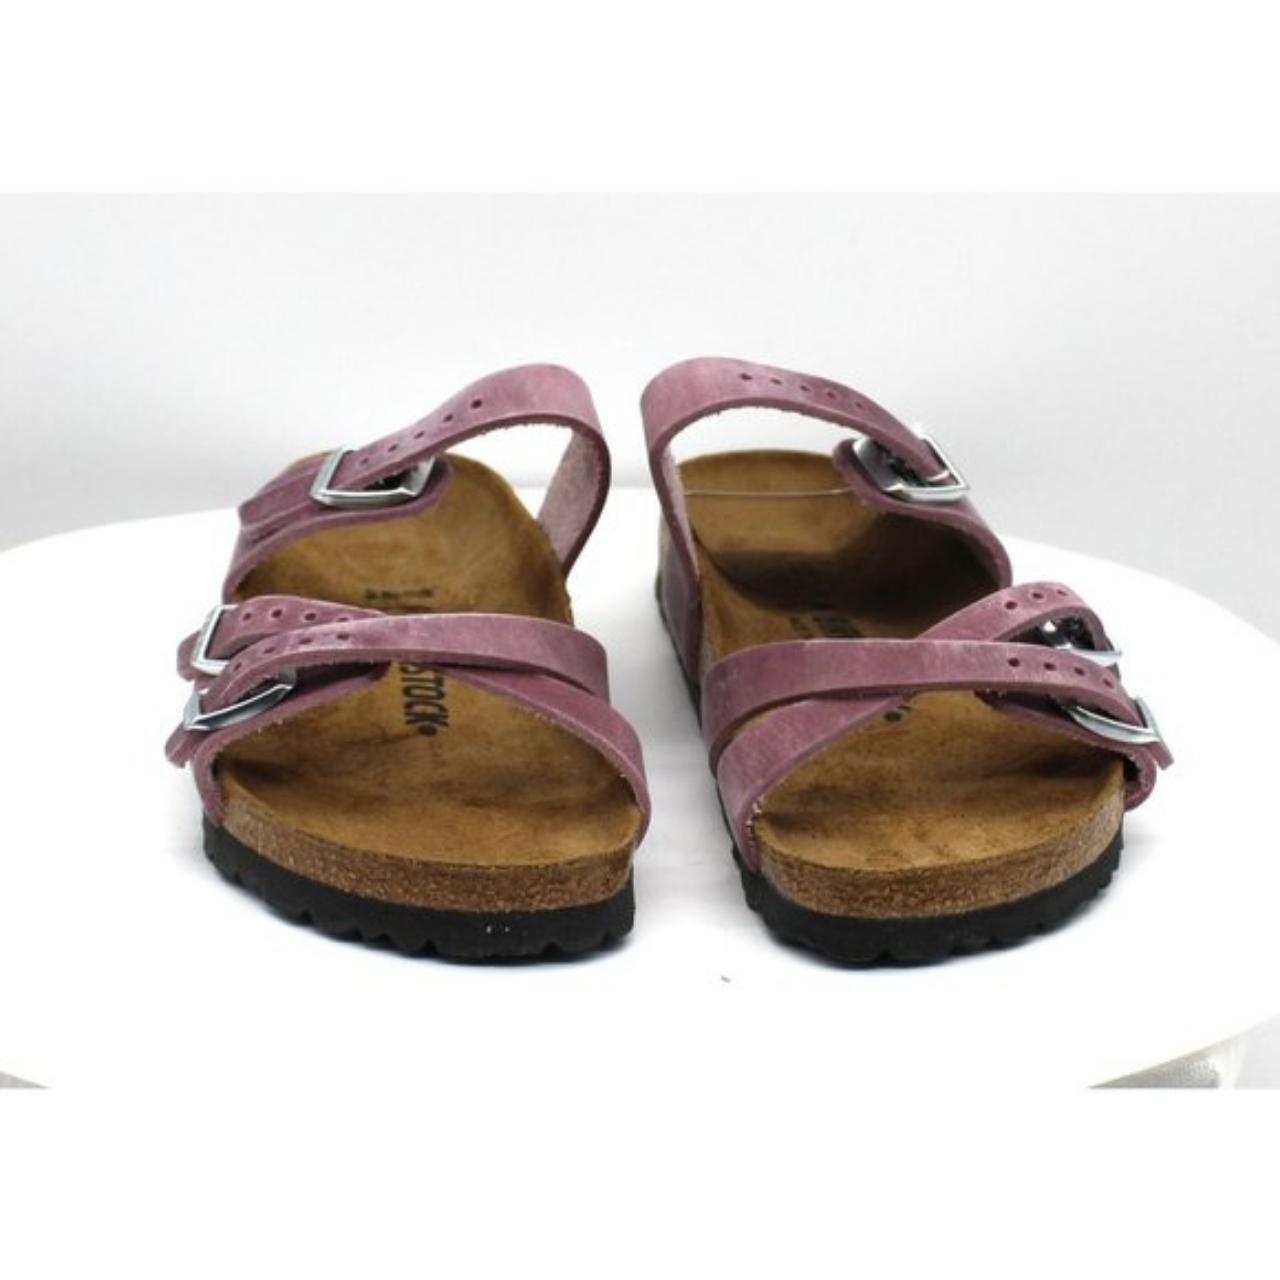 Product Image 3 - Women's Birkenstock Franca Slide Sandal

Built